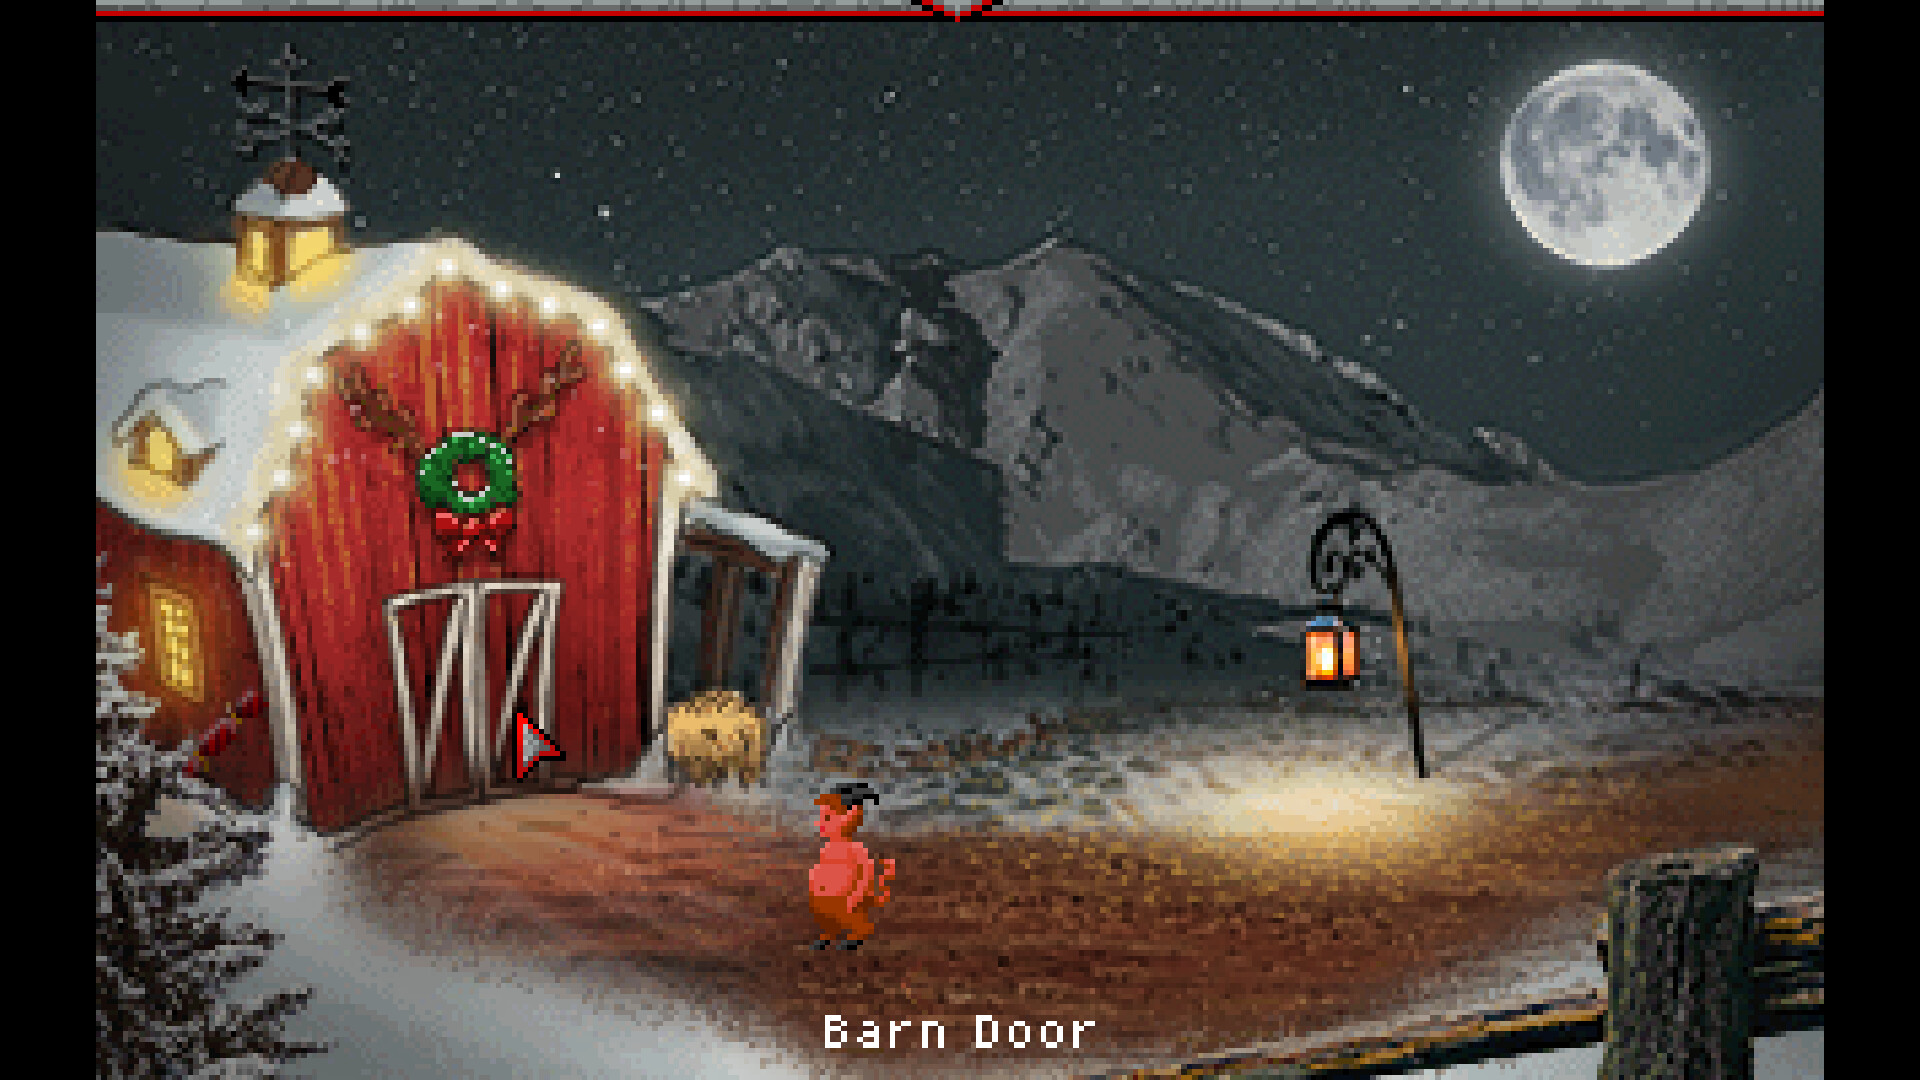 Azazel's Christmas Fable Steam CD Key 5.64 $